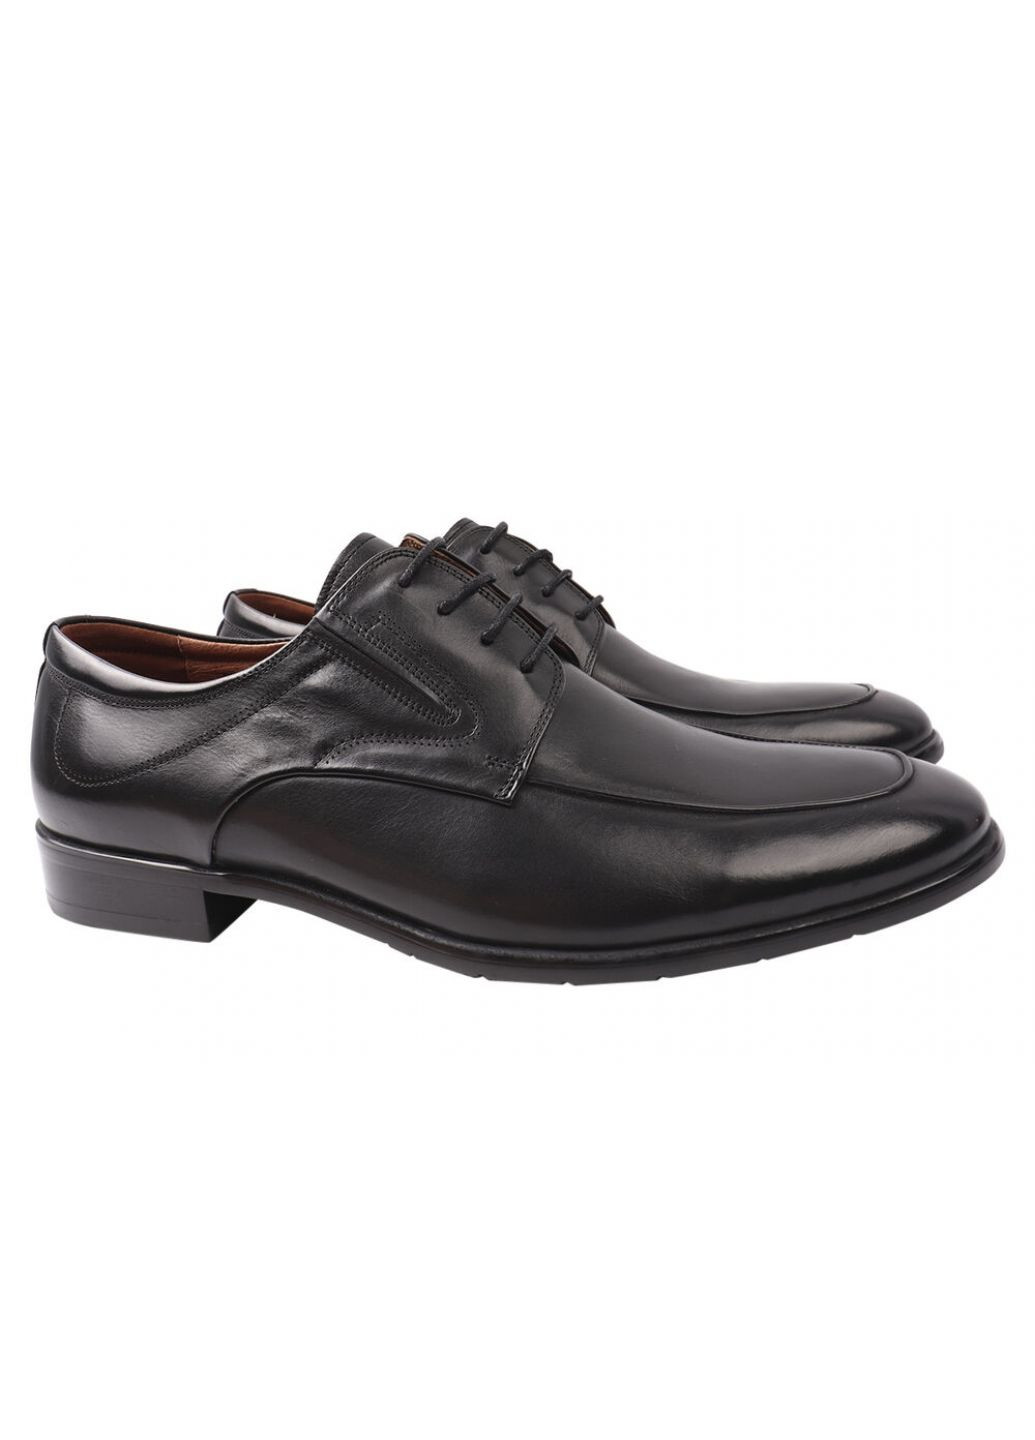 Черные туфли мужские из натуральной кожи, на шнуровке, на низком ходу, черные, lido marinozi Lido Marinozzi